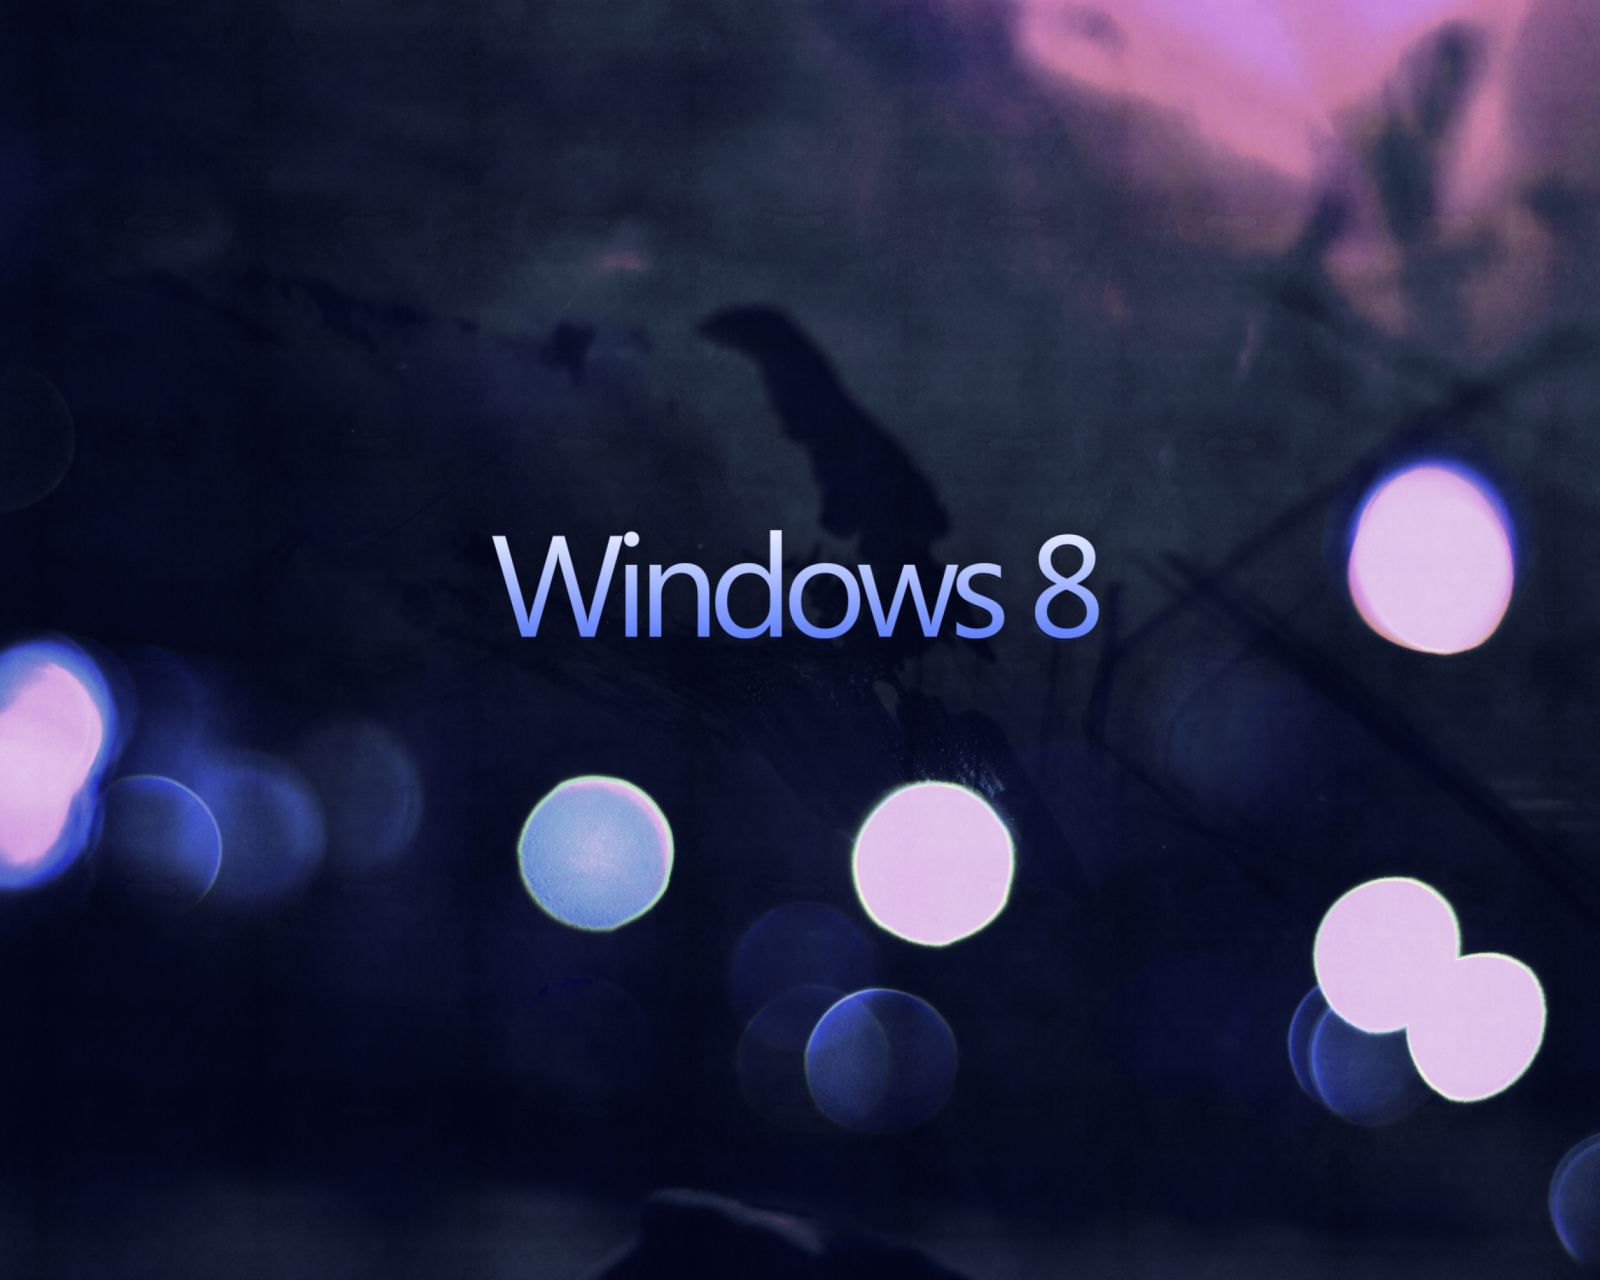 Windows 8 - Hi-Tech screenshot #1 1600x1280